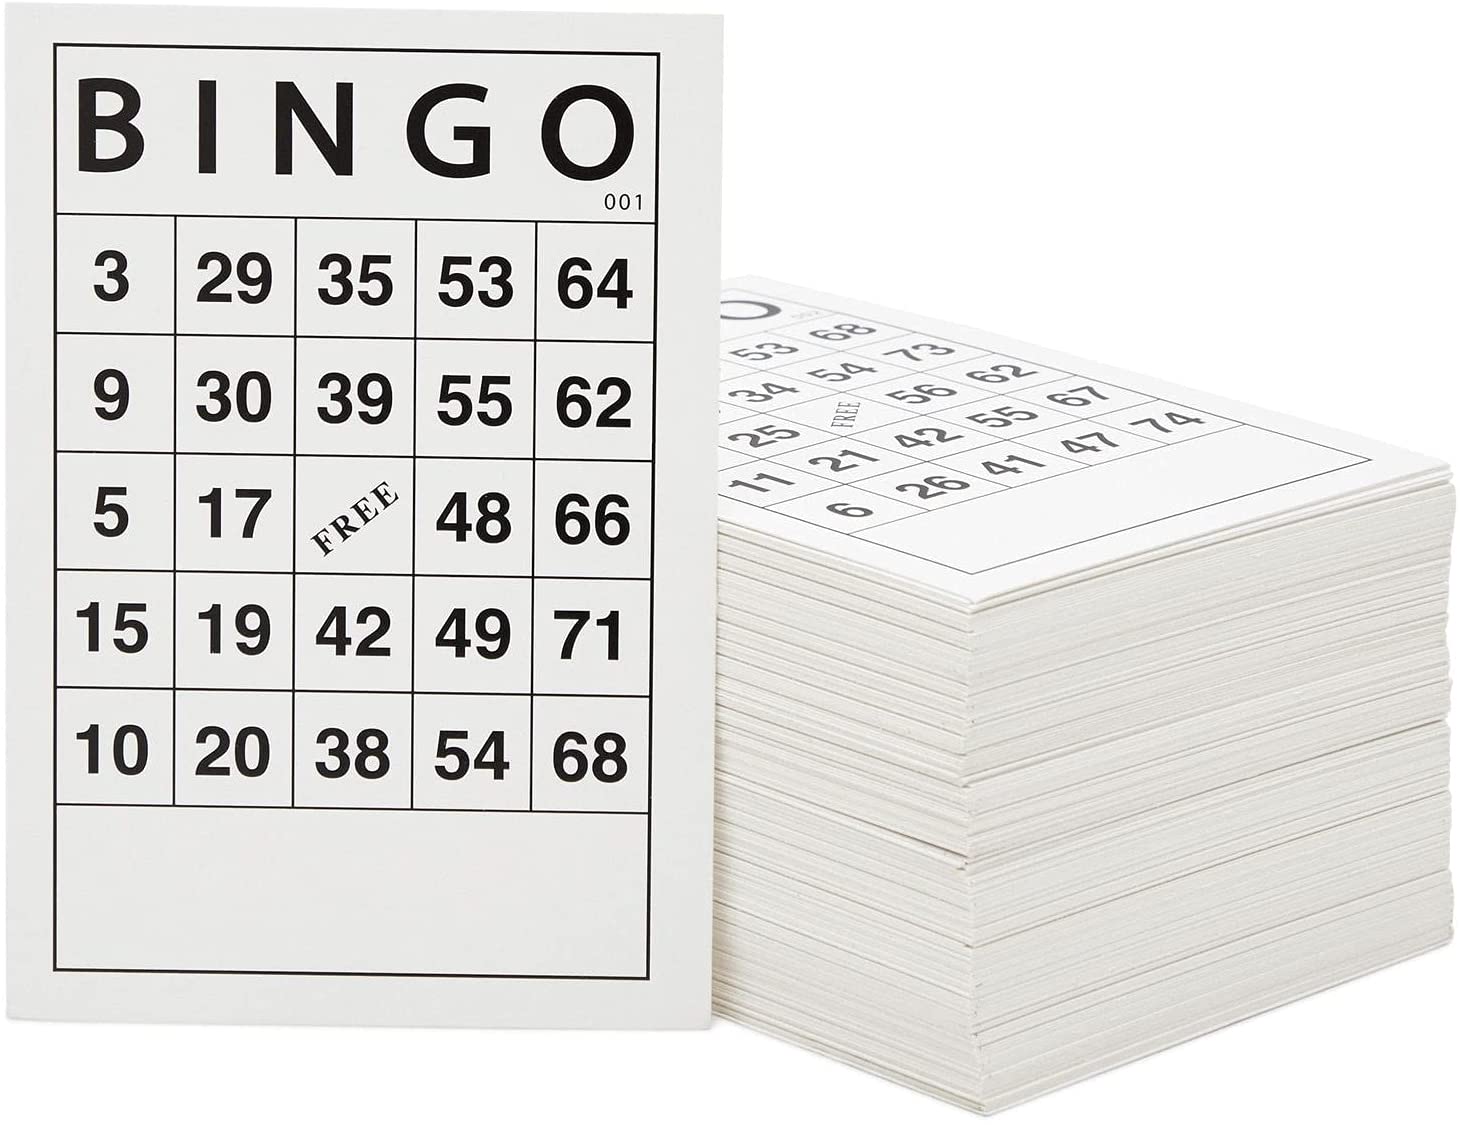 Requisitos de apuesta para jugar al bingo online